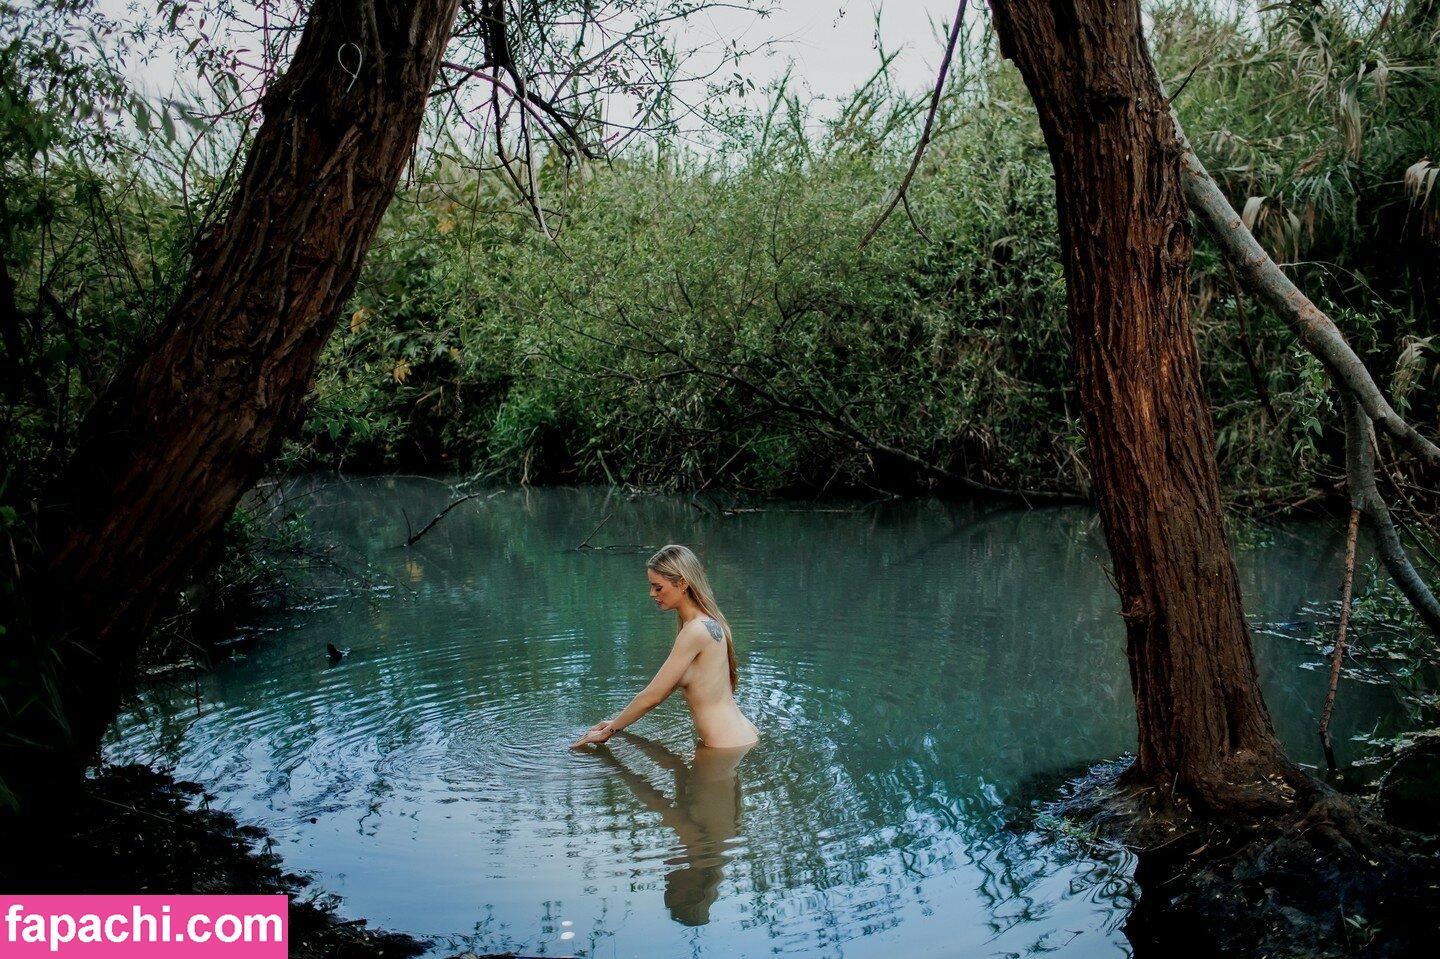 Nikol Lemme / nikol_lemme leaked nude photo #0062 from OnlyFans/Patreon